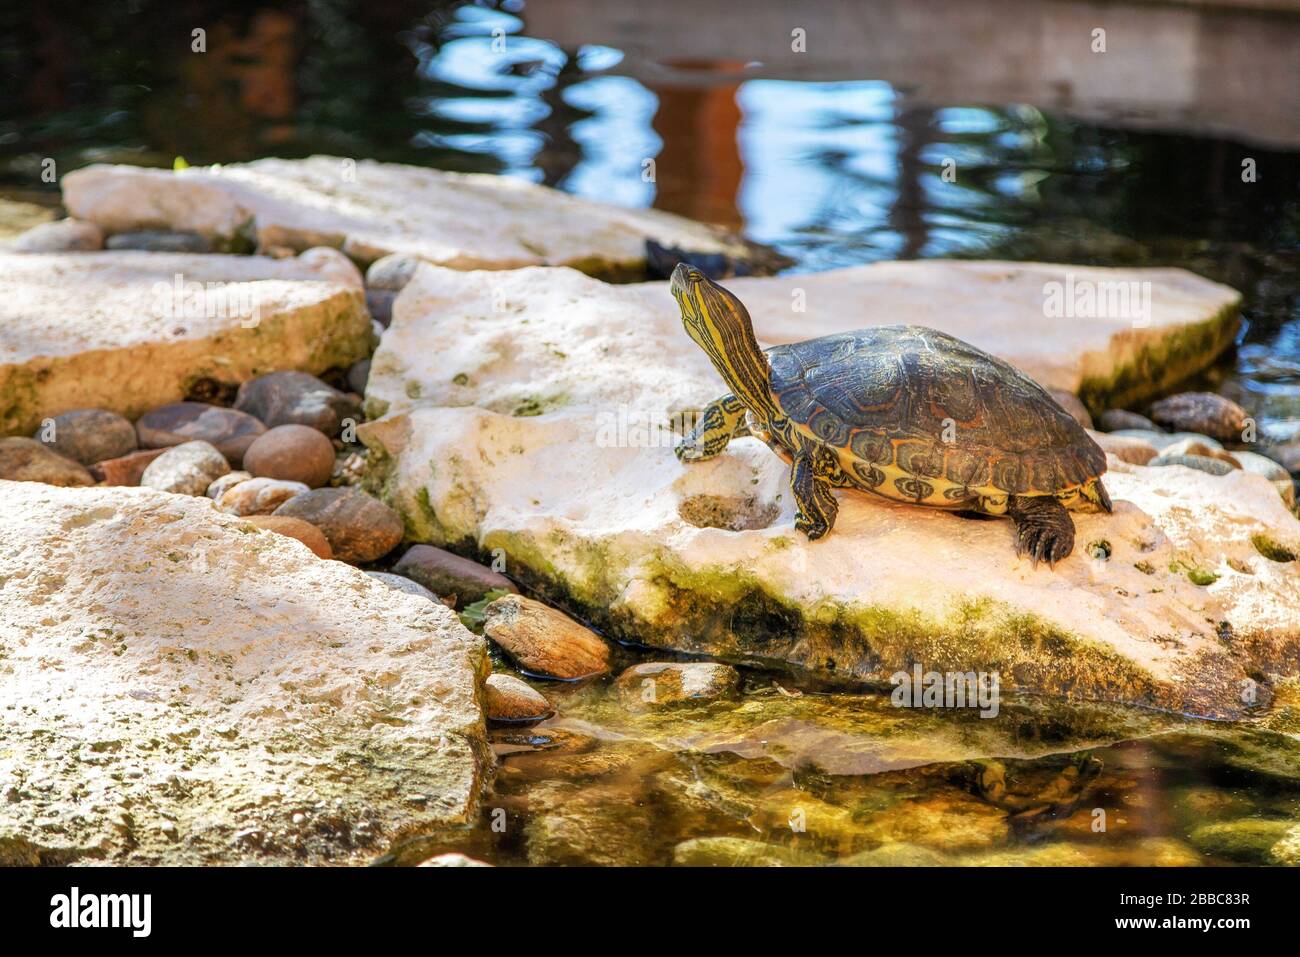 Rote-Ohr-Tier-Terrapin-Schildkröte in einem Teich. Die Schildkröte ist eine semi-aquatische Spezie, die zur Familie Emydidae gehört. Stockfoto